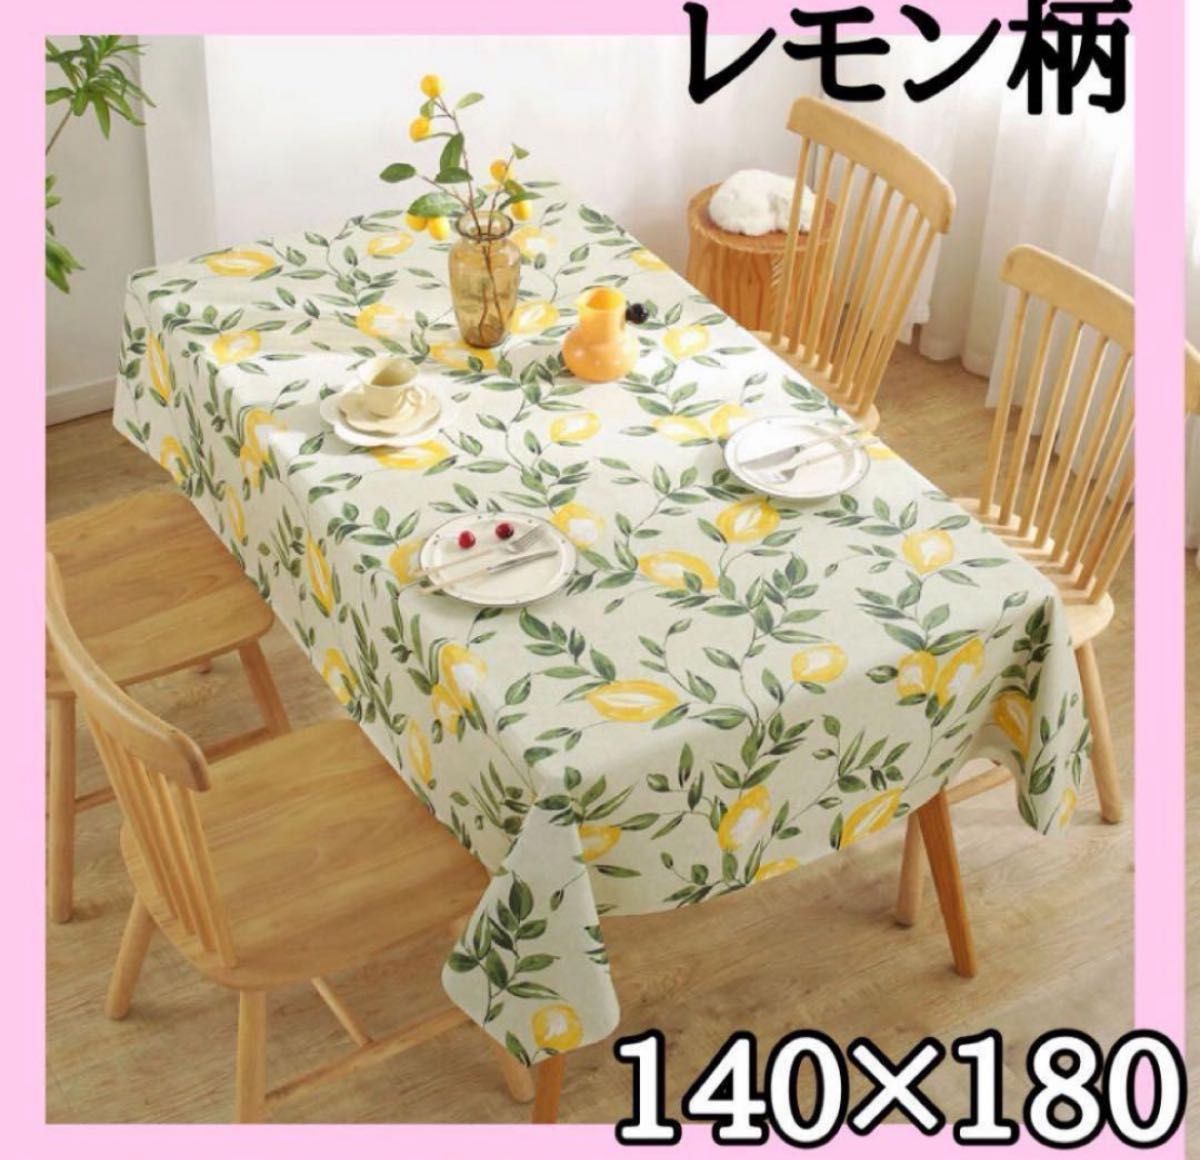 テーブルクロス 140×180 レモン柄 防水加工 長方形 北欧 インテリア 爽やか 初夏  おしゃれ テーブルカバー 黄色